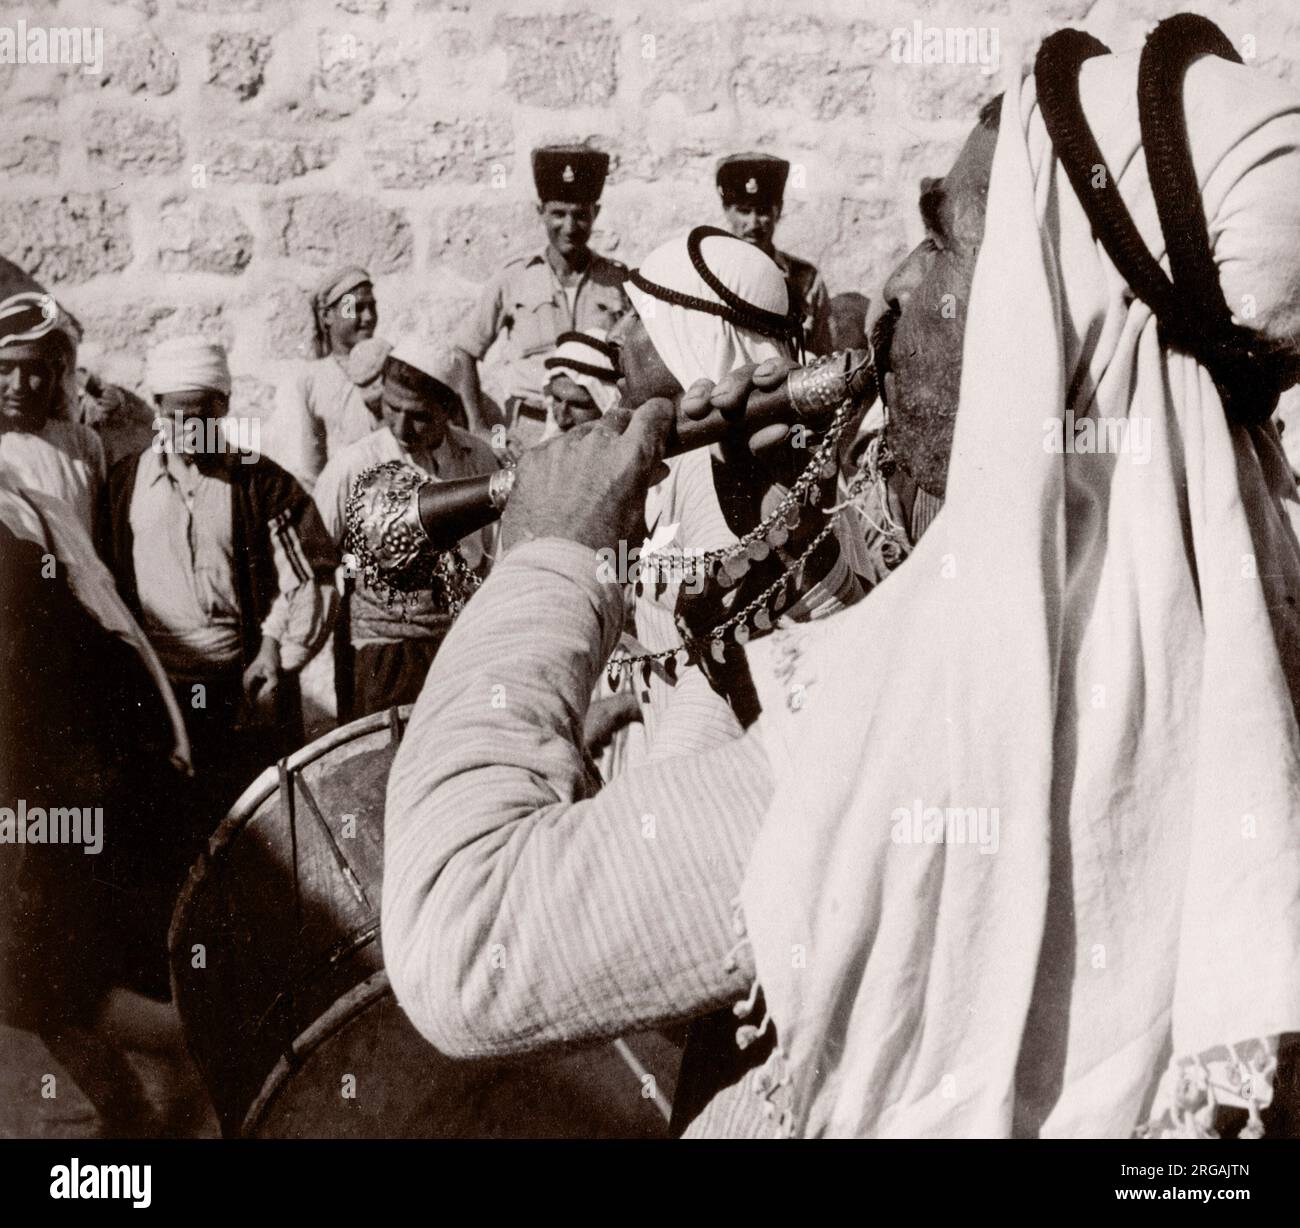 1943 Syrie - célébration du festival de l'Eid à Bobline Photographie par un officier de recrutement de l'armée britannique stationnés en Afrique de l'est et au Moyen-Orient pendant la Seconde Guerre mondiale Banque D'Images